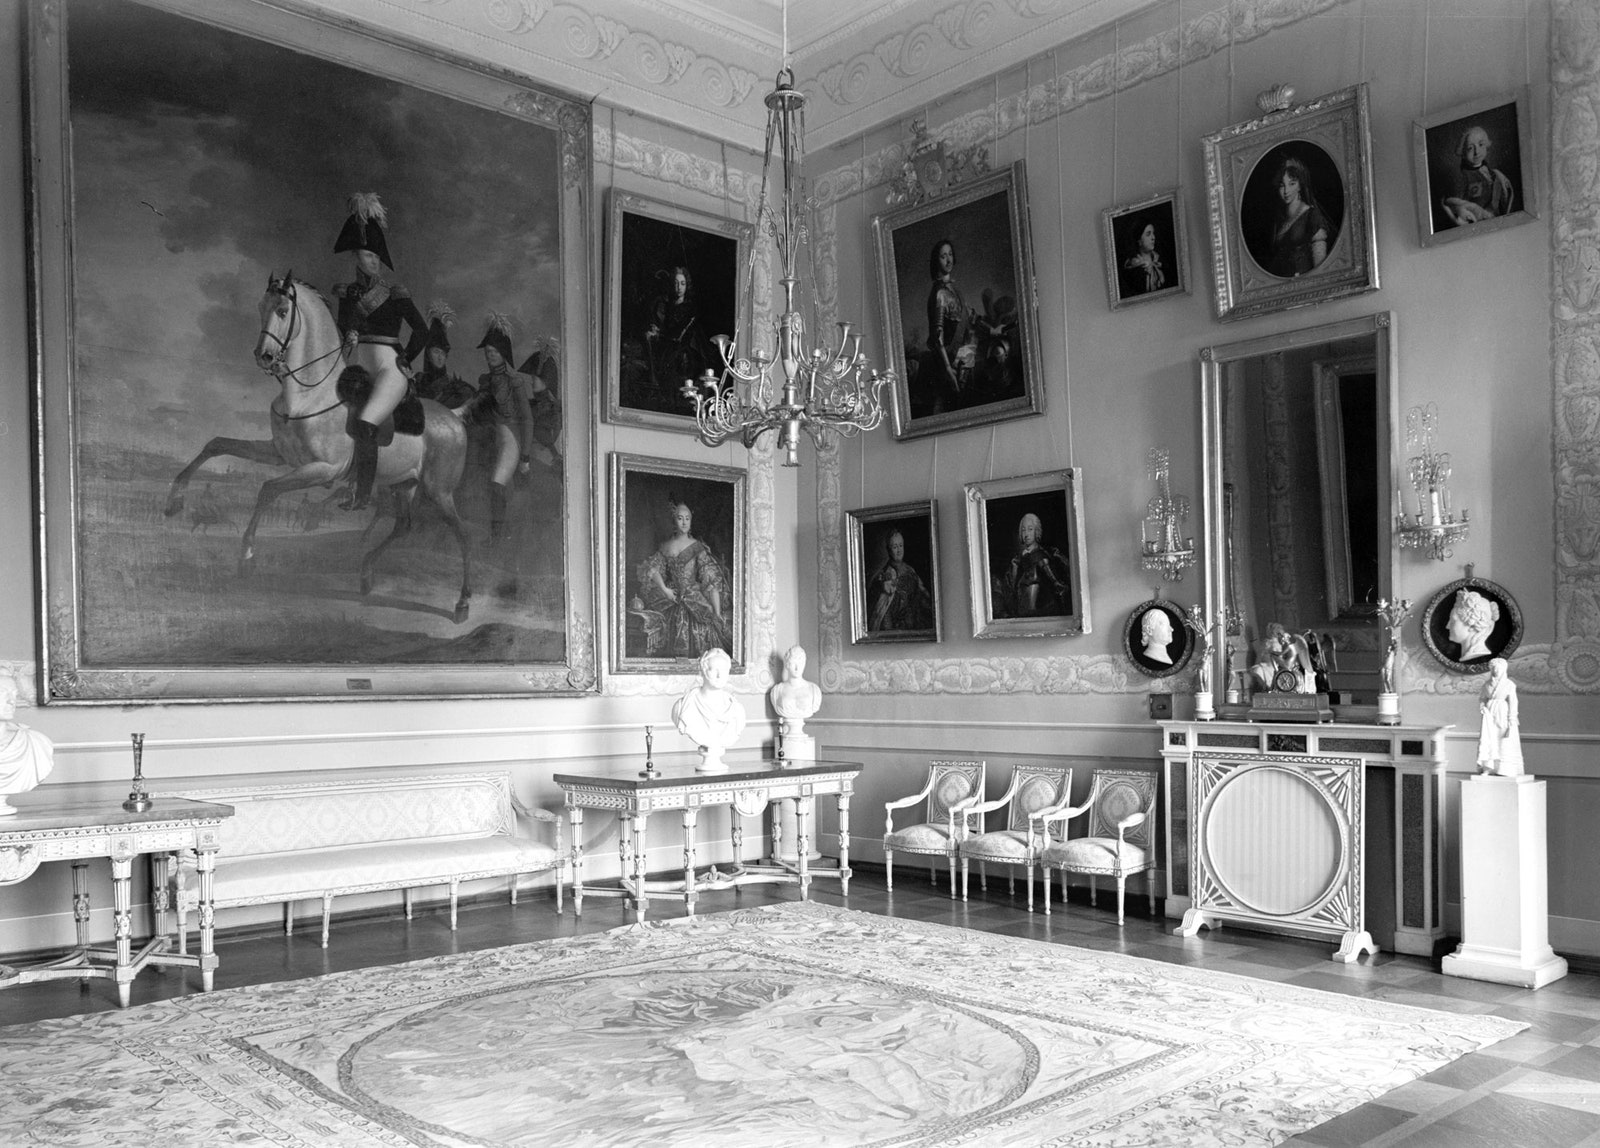 20 июня 1954 г. Интерьер императорского зала в главном доме дворцовопаркового ансамбля quotАрхангельскоеquot конца XVIII...